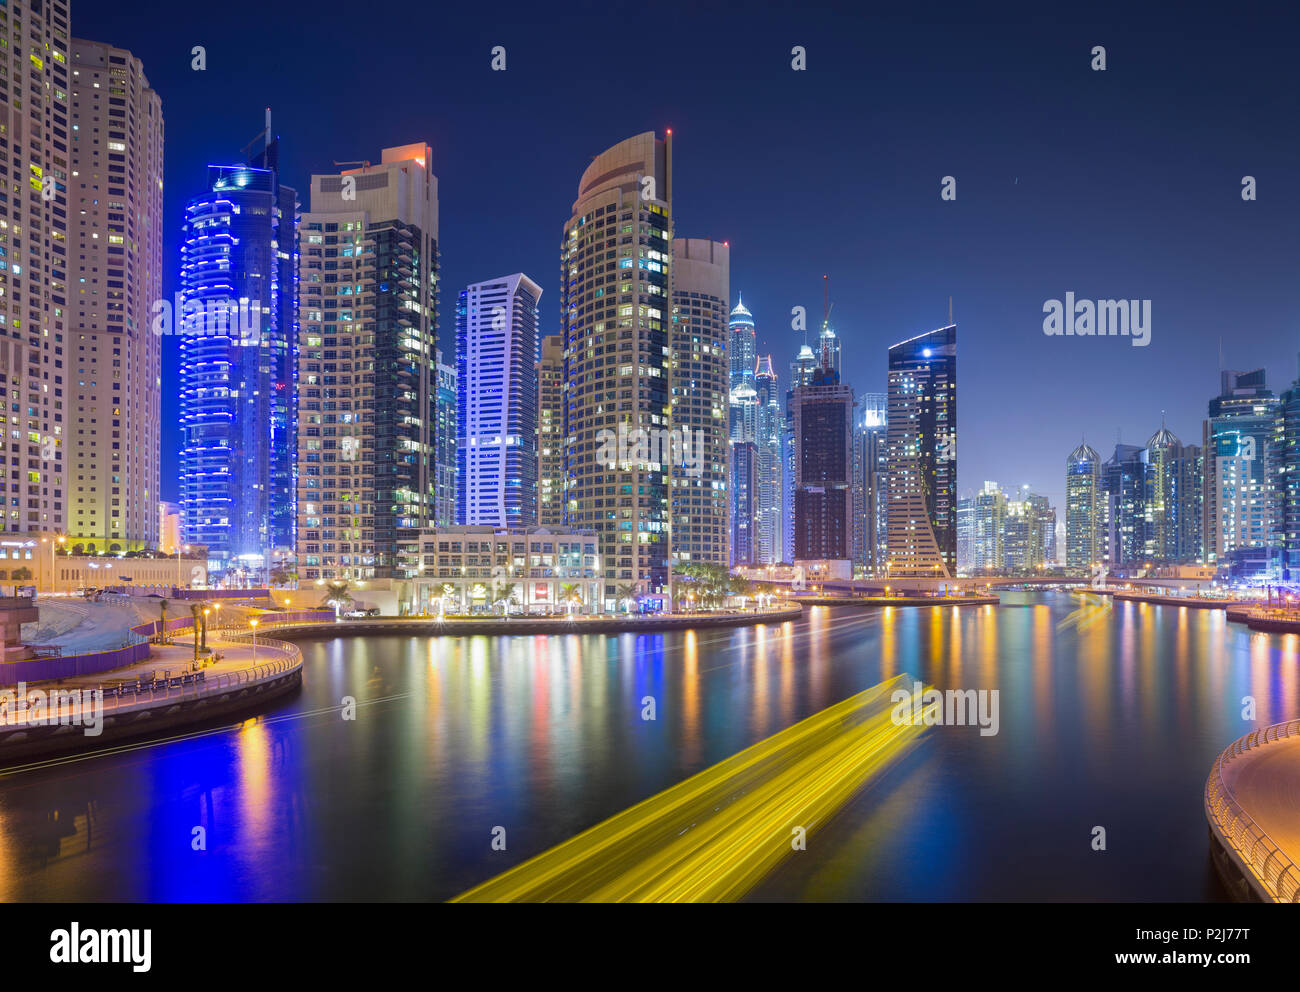 Skyscrapers in Dubai Marina, Dubai, Unites Arab Emirates, UAE Stock Photo